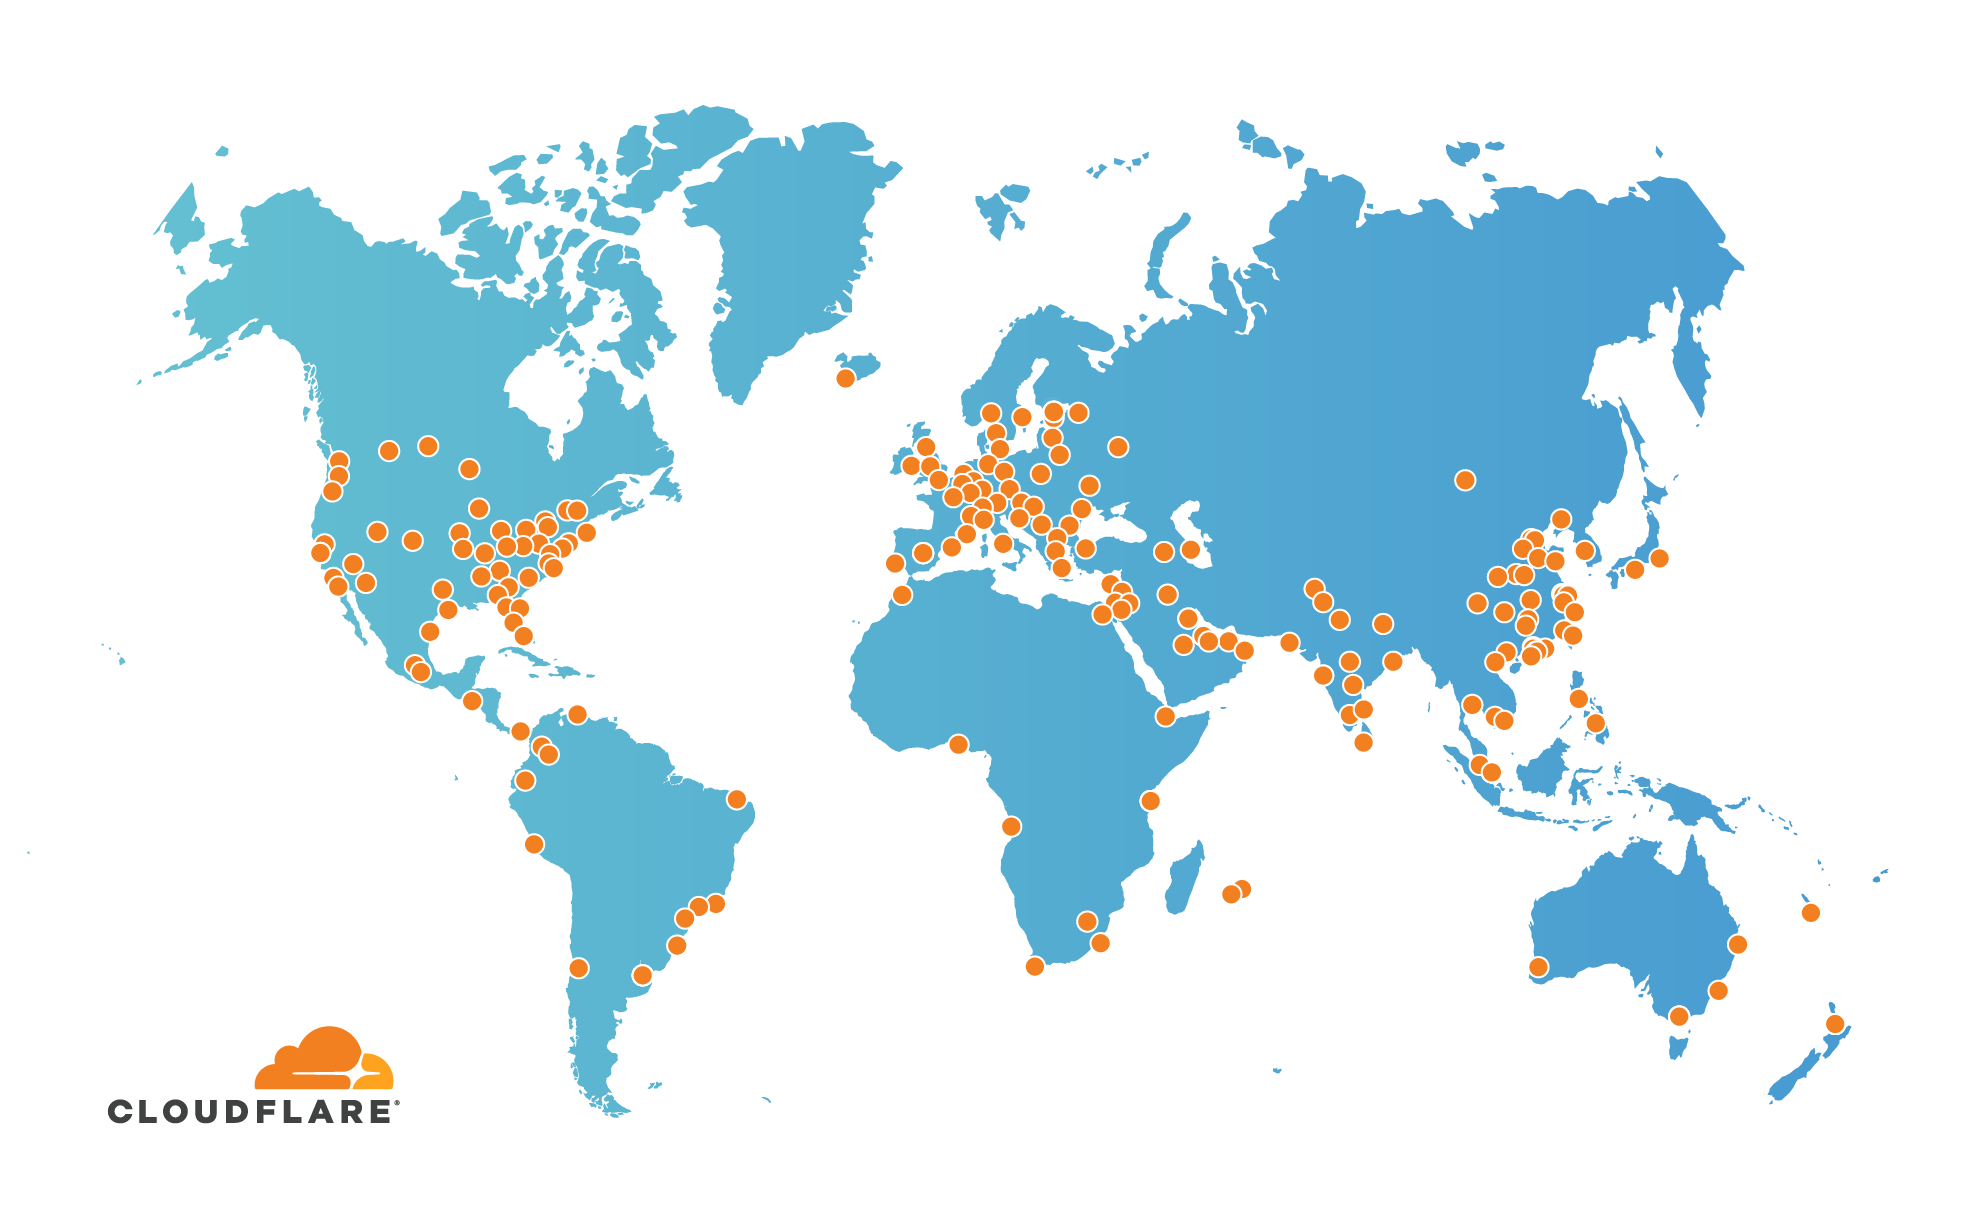 Cloudflare Global Network s'étend à 193 villes